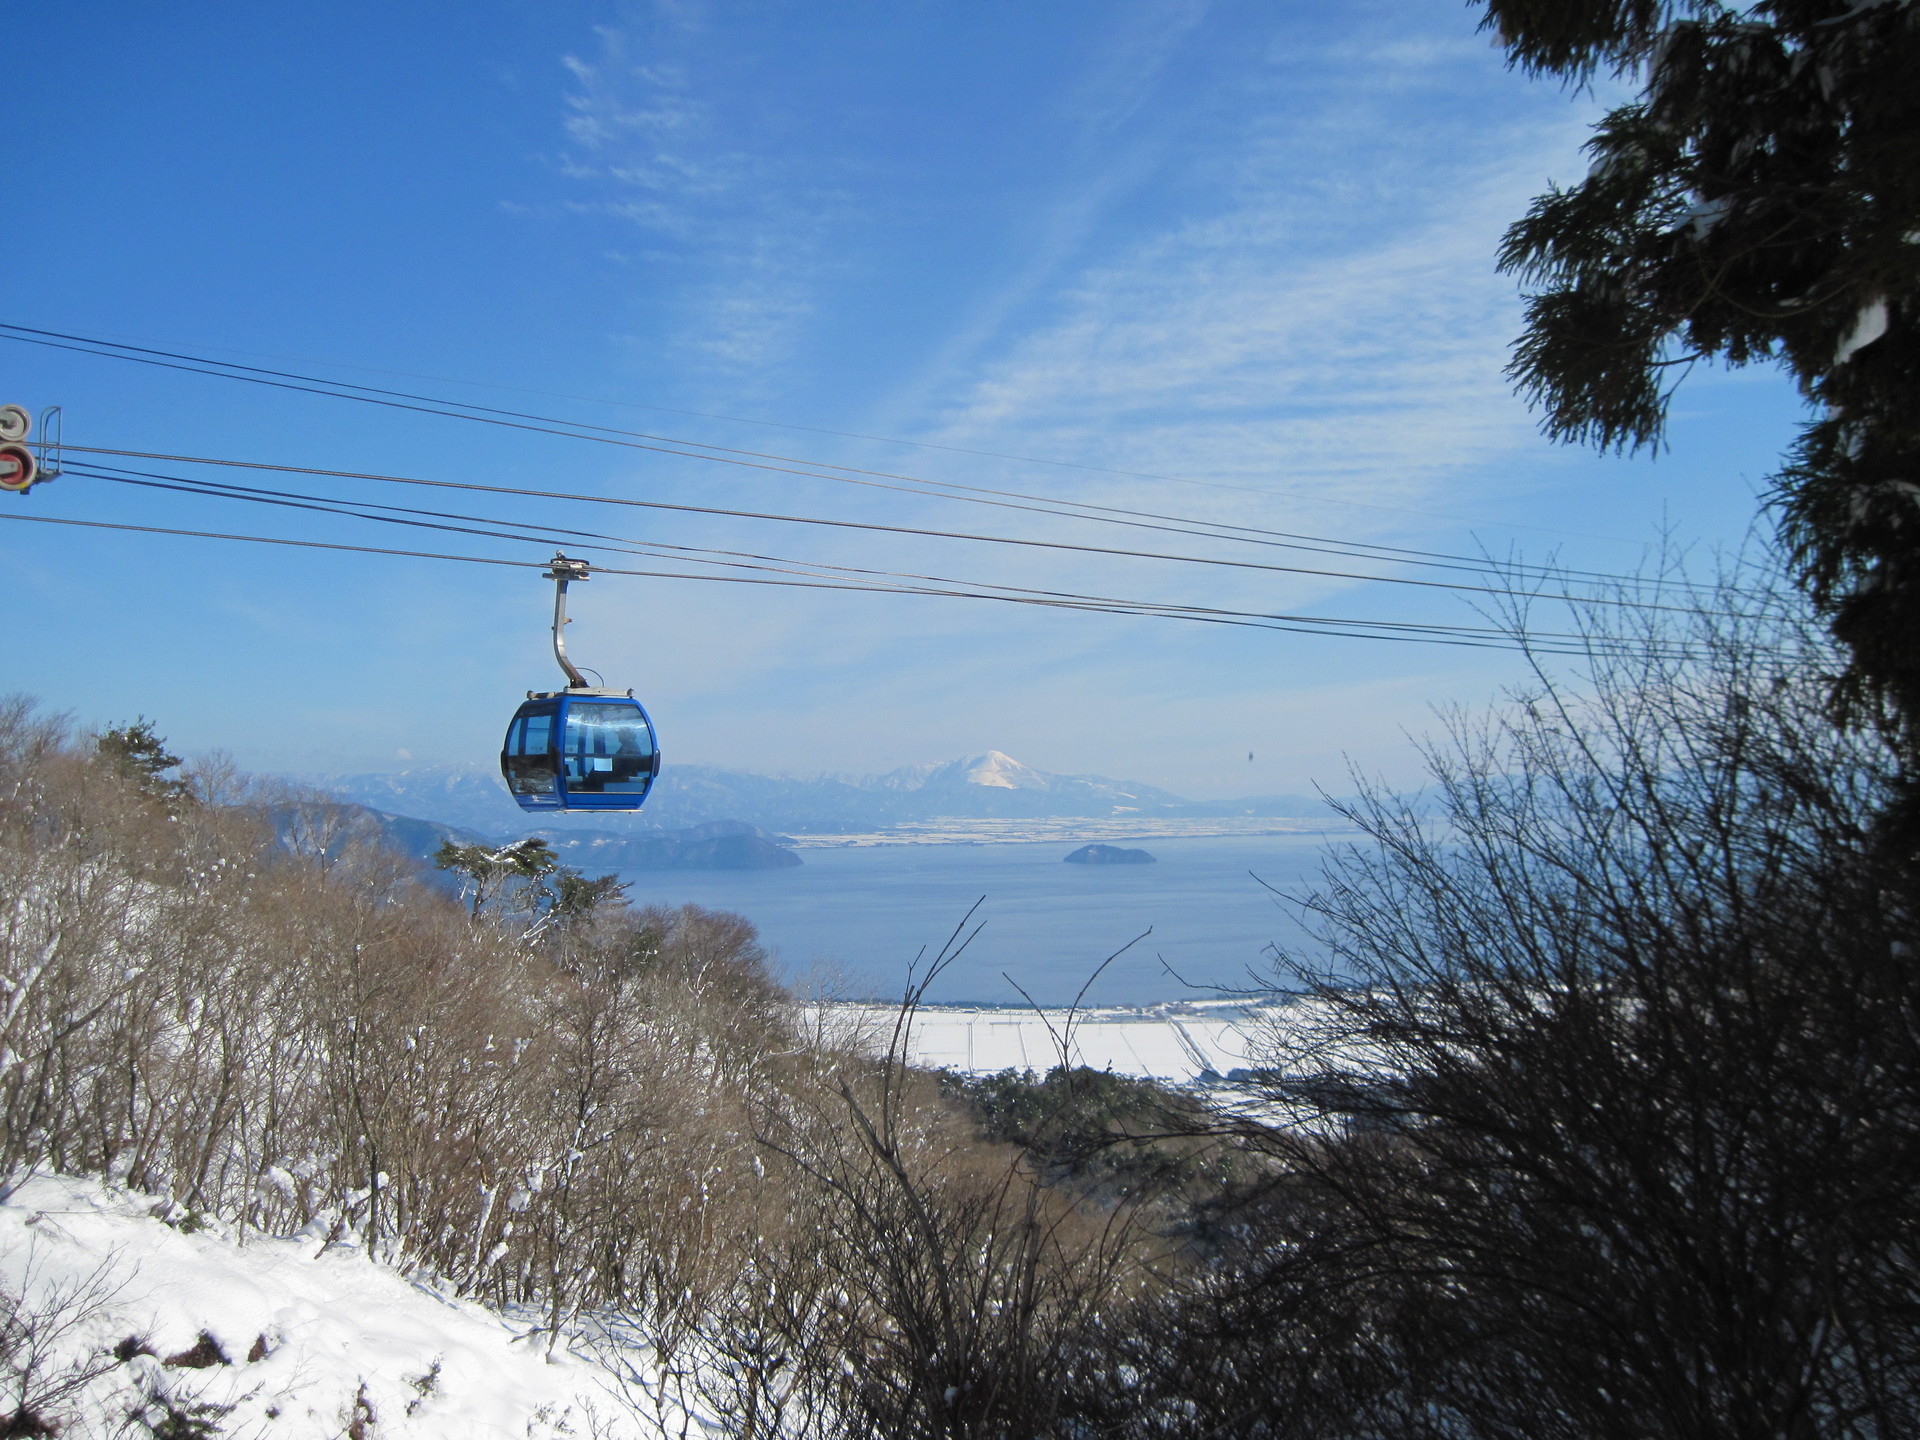 Hakodateyama Ski Resort